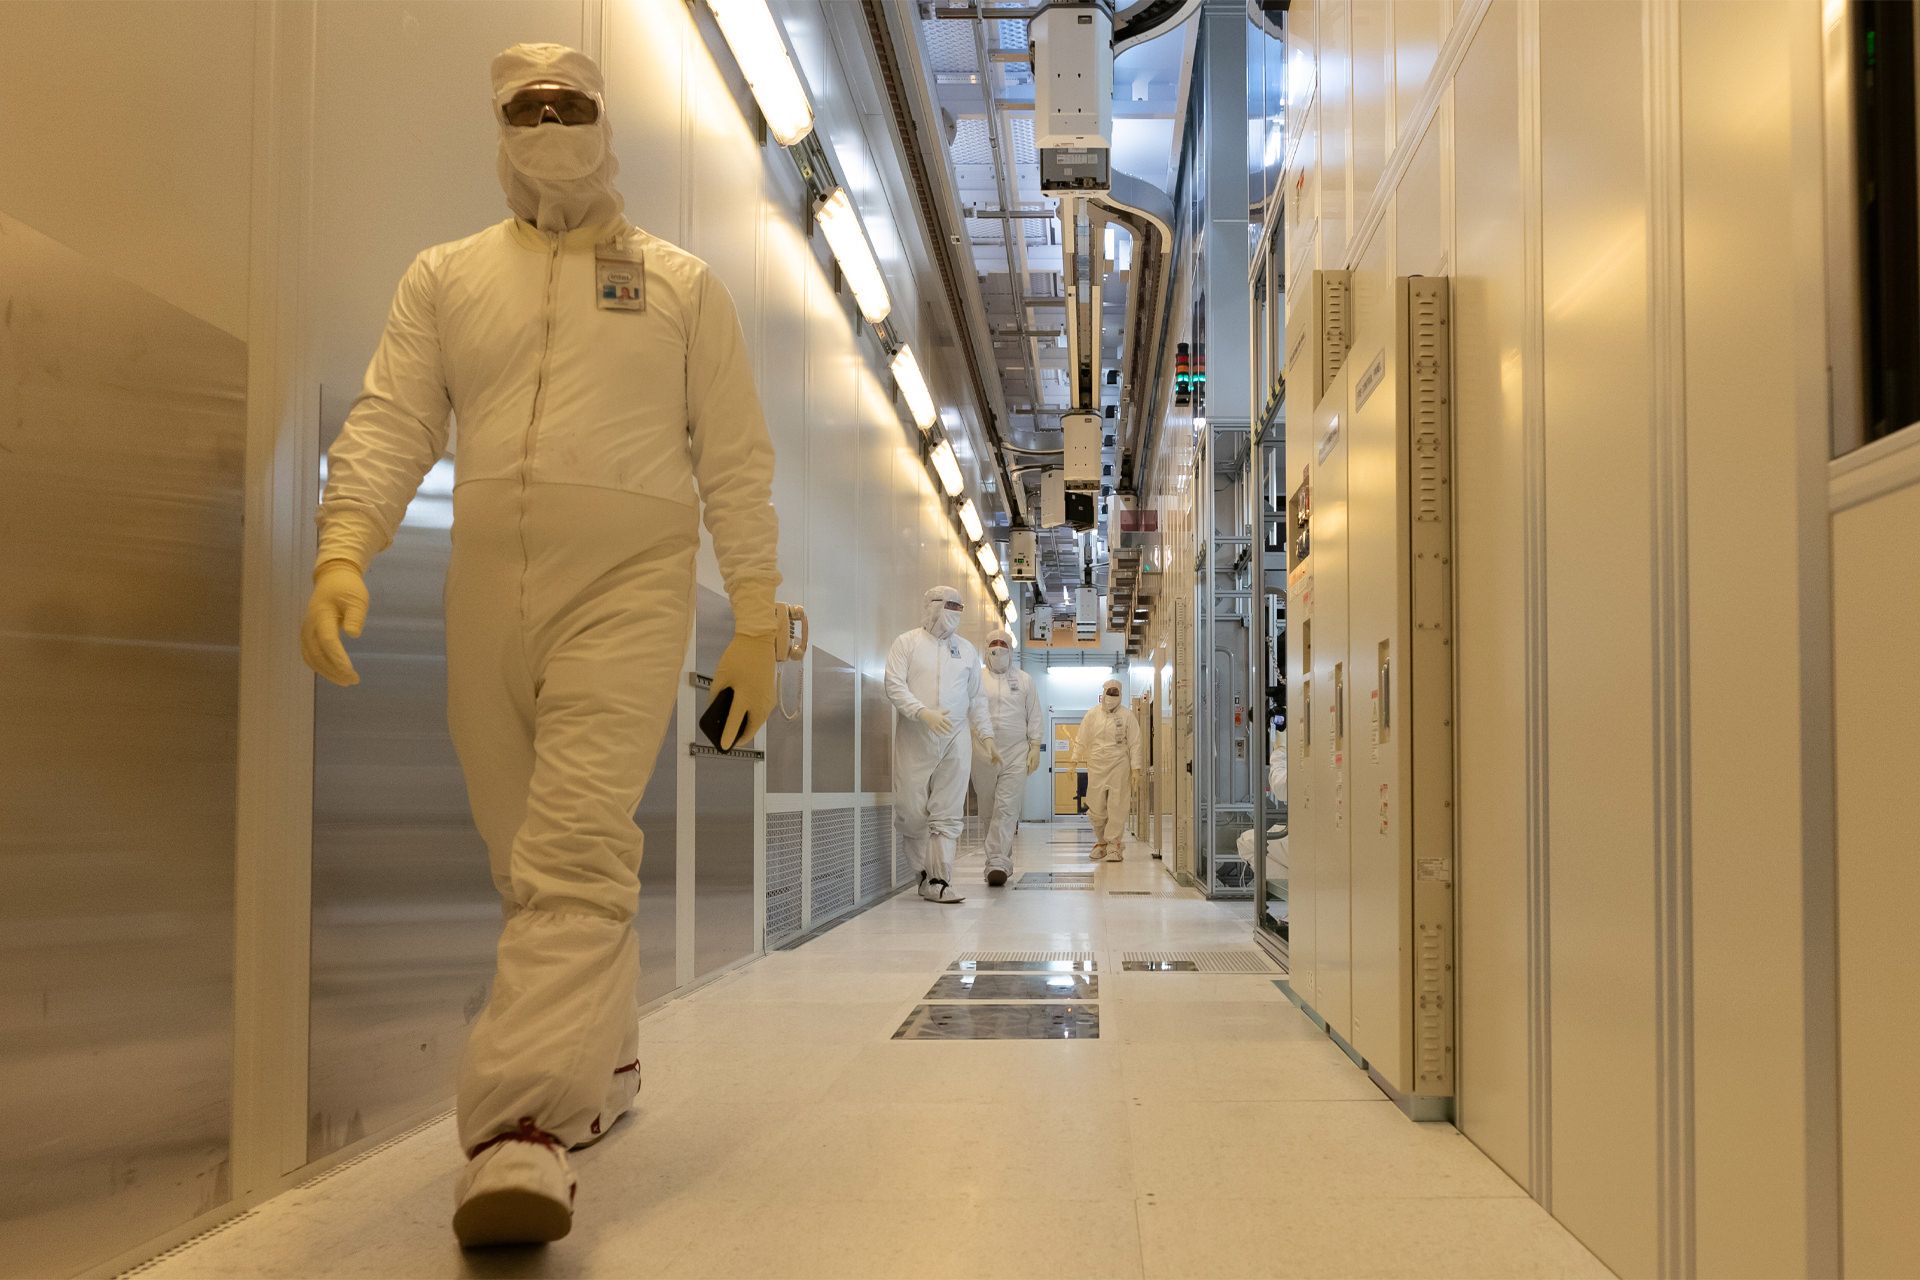 داخل کارخانه تولیدی اینتل / Intel چند فرد با لباس سفید